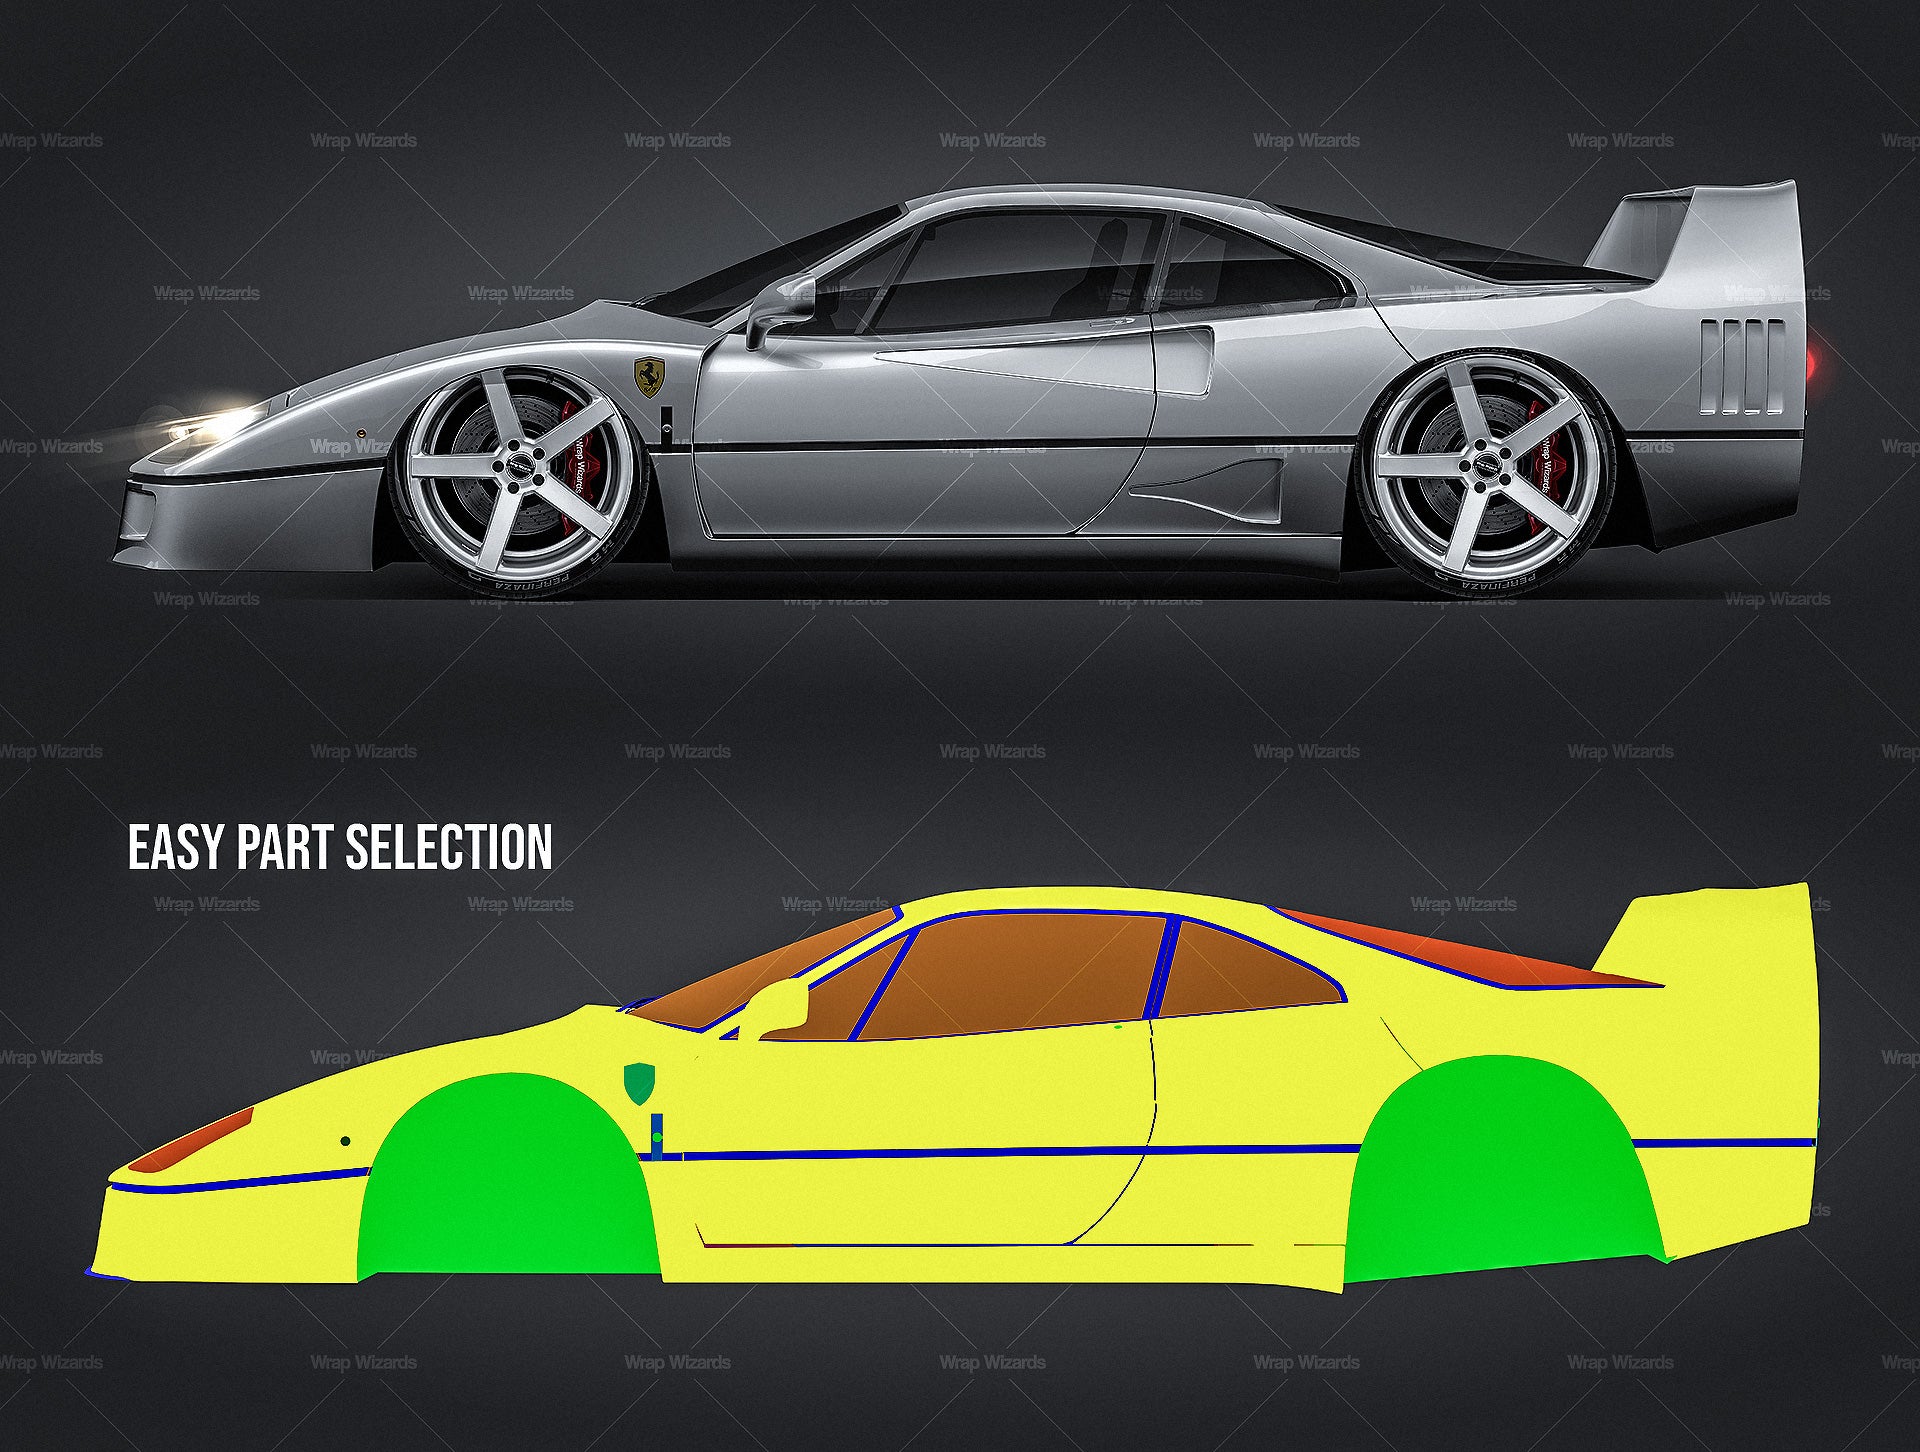 Ferrari F40 glossy finish - all sides Car Mockup Template.psd